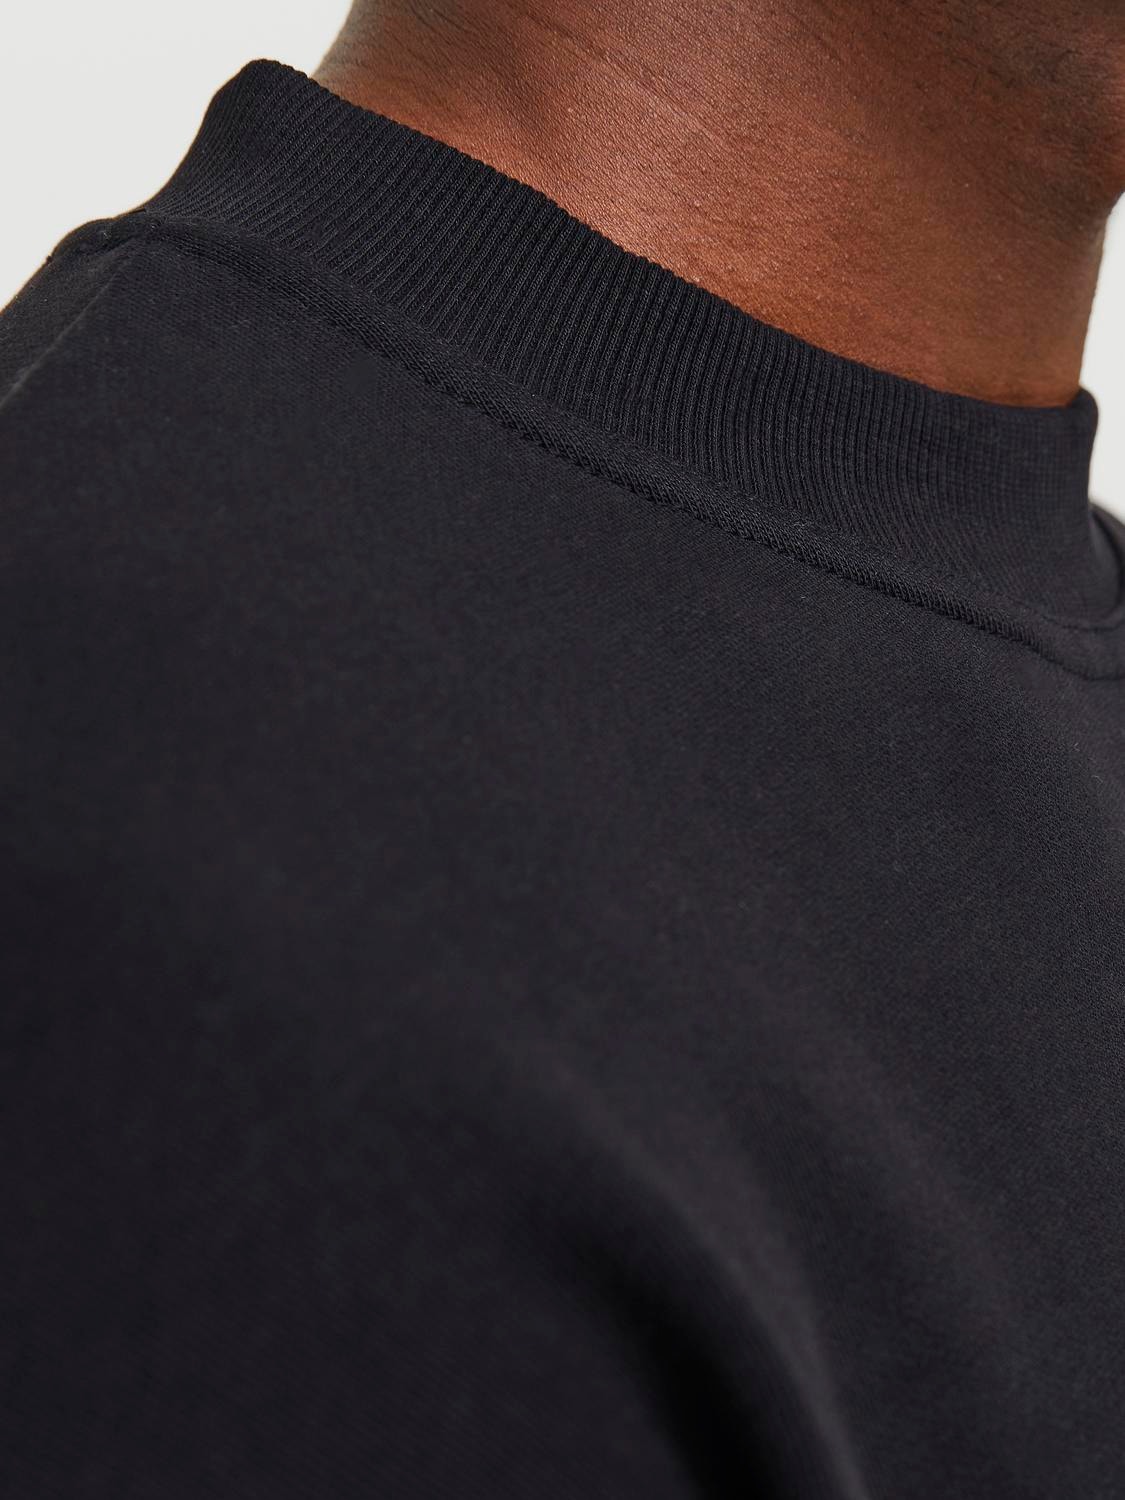 Jack & Jones Oversize Fit Crew neck Sweatshirt -Black - 12251330